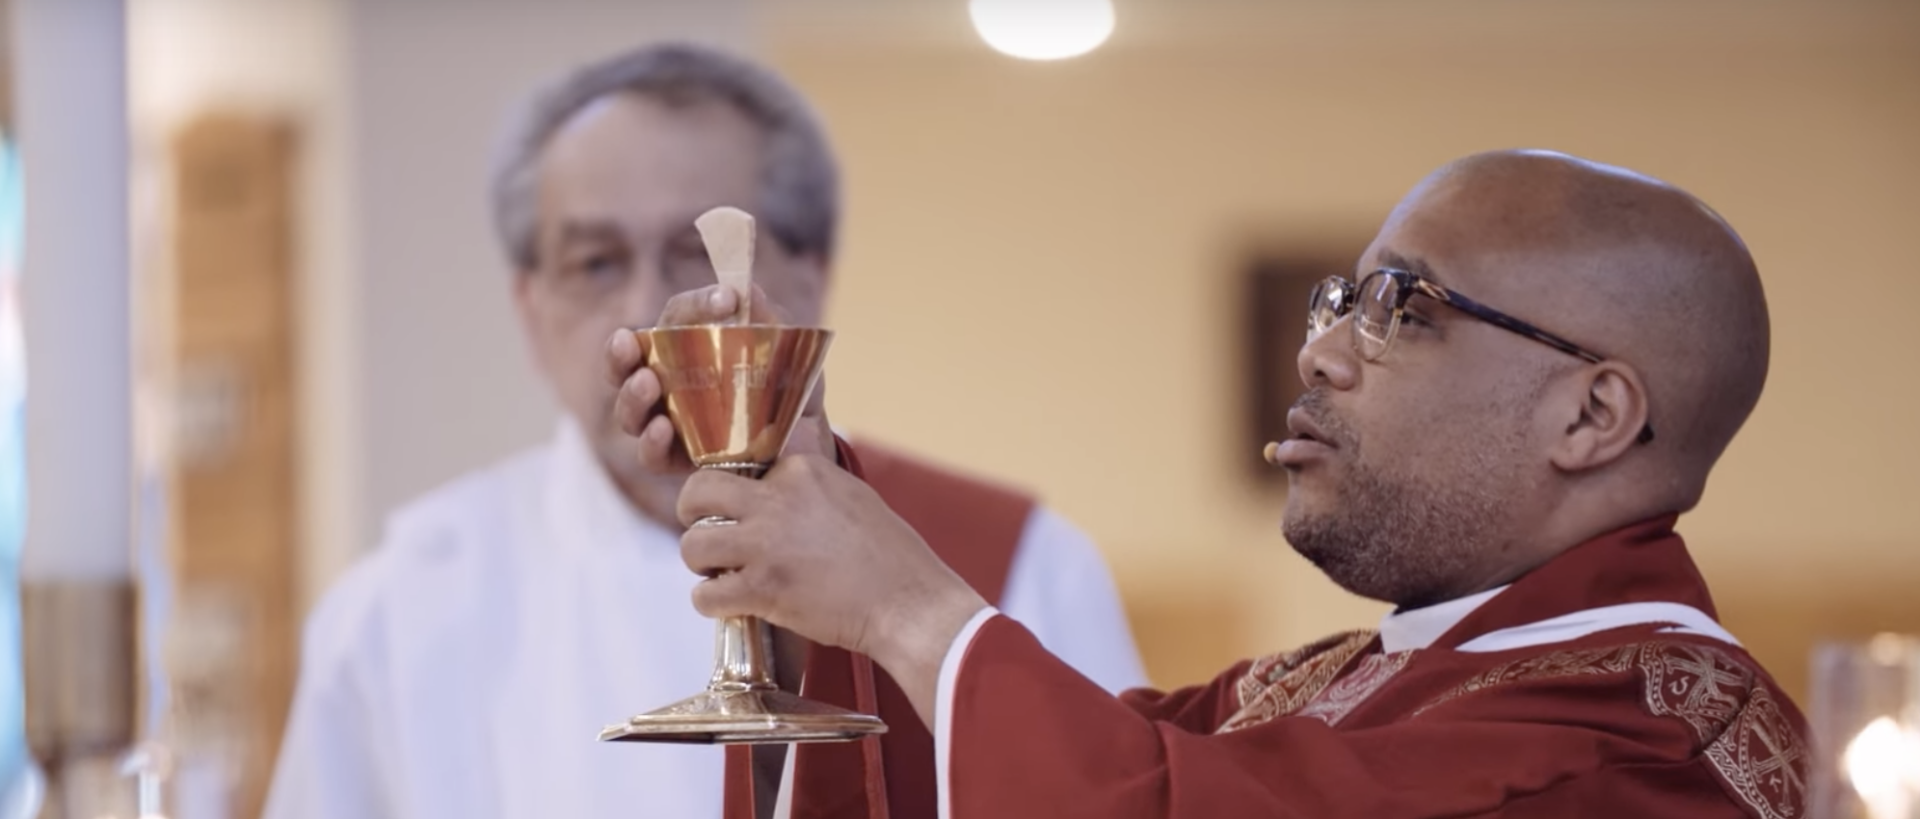 Le pape François a appelé à retrouver le vrai sens de l'Eucharistie | capture d'écran Réseau mondial de prière du pape